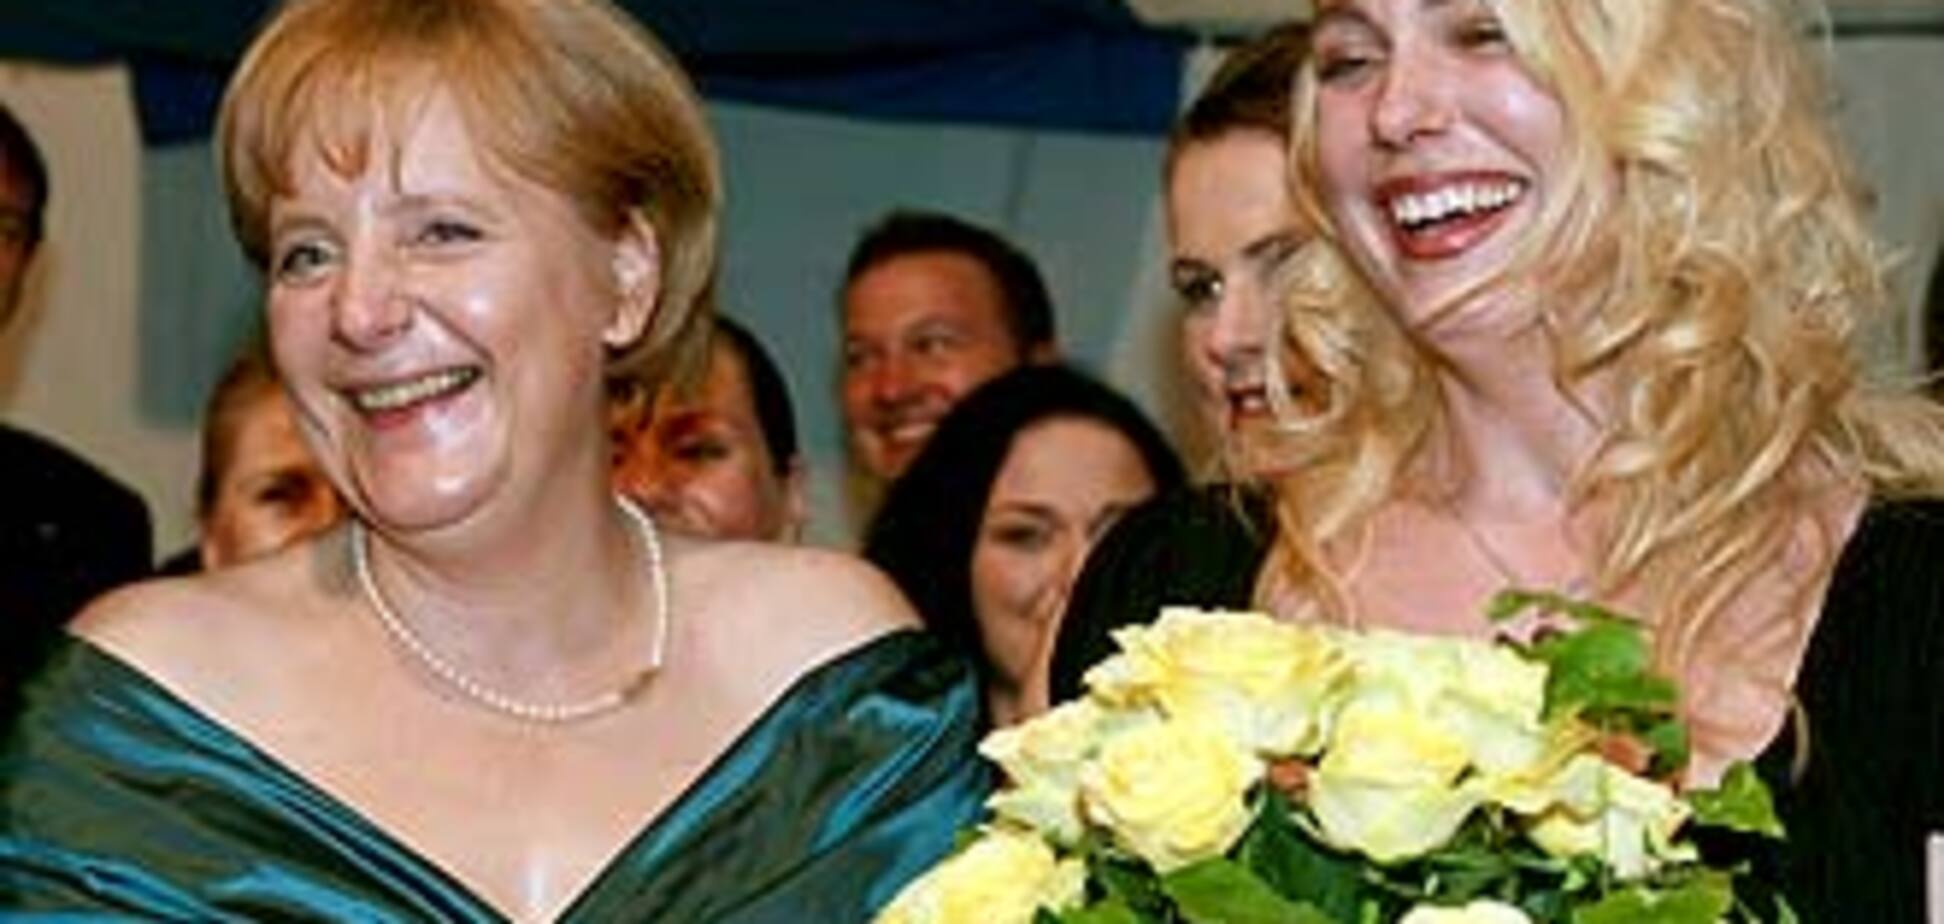 Ангела Меркель меняет мешковатую одежду на открытые платья